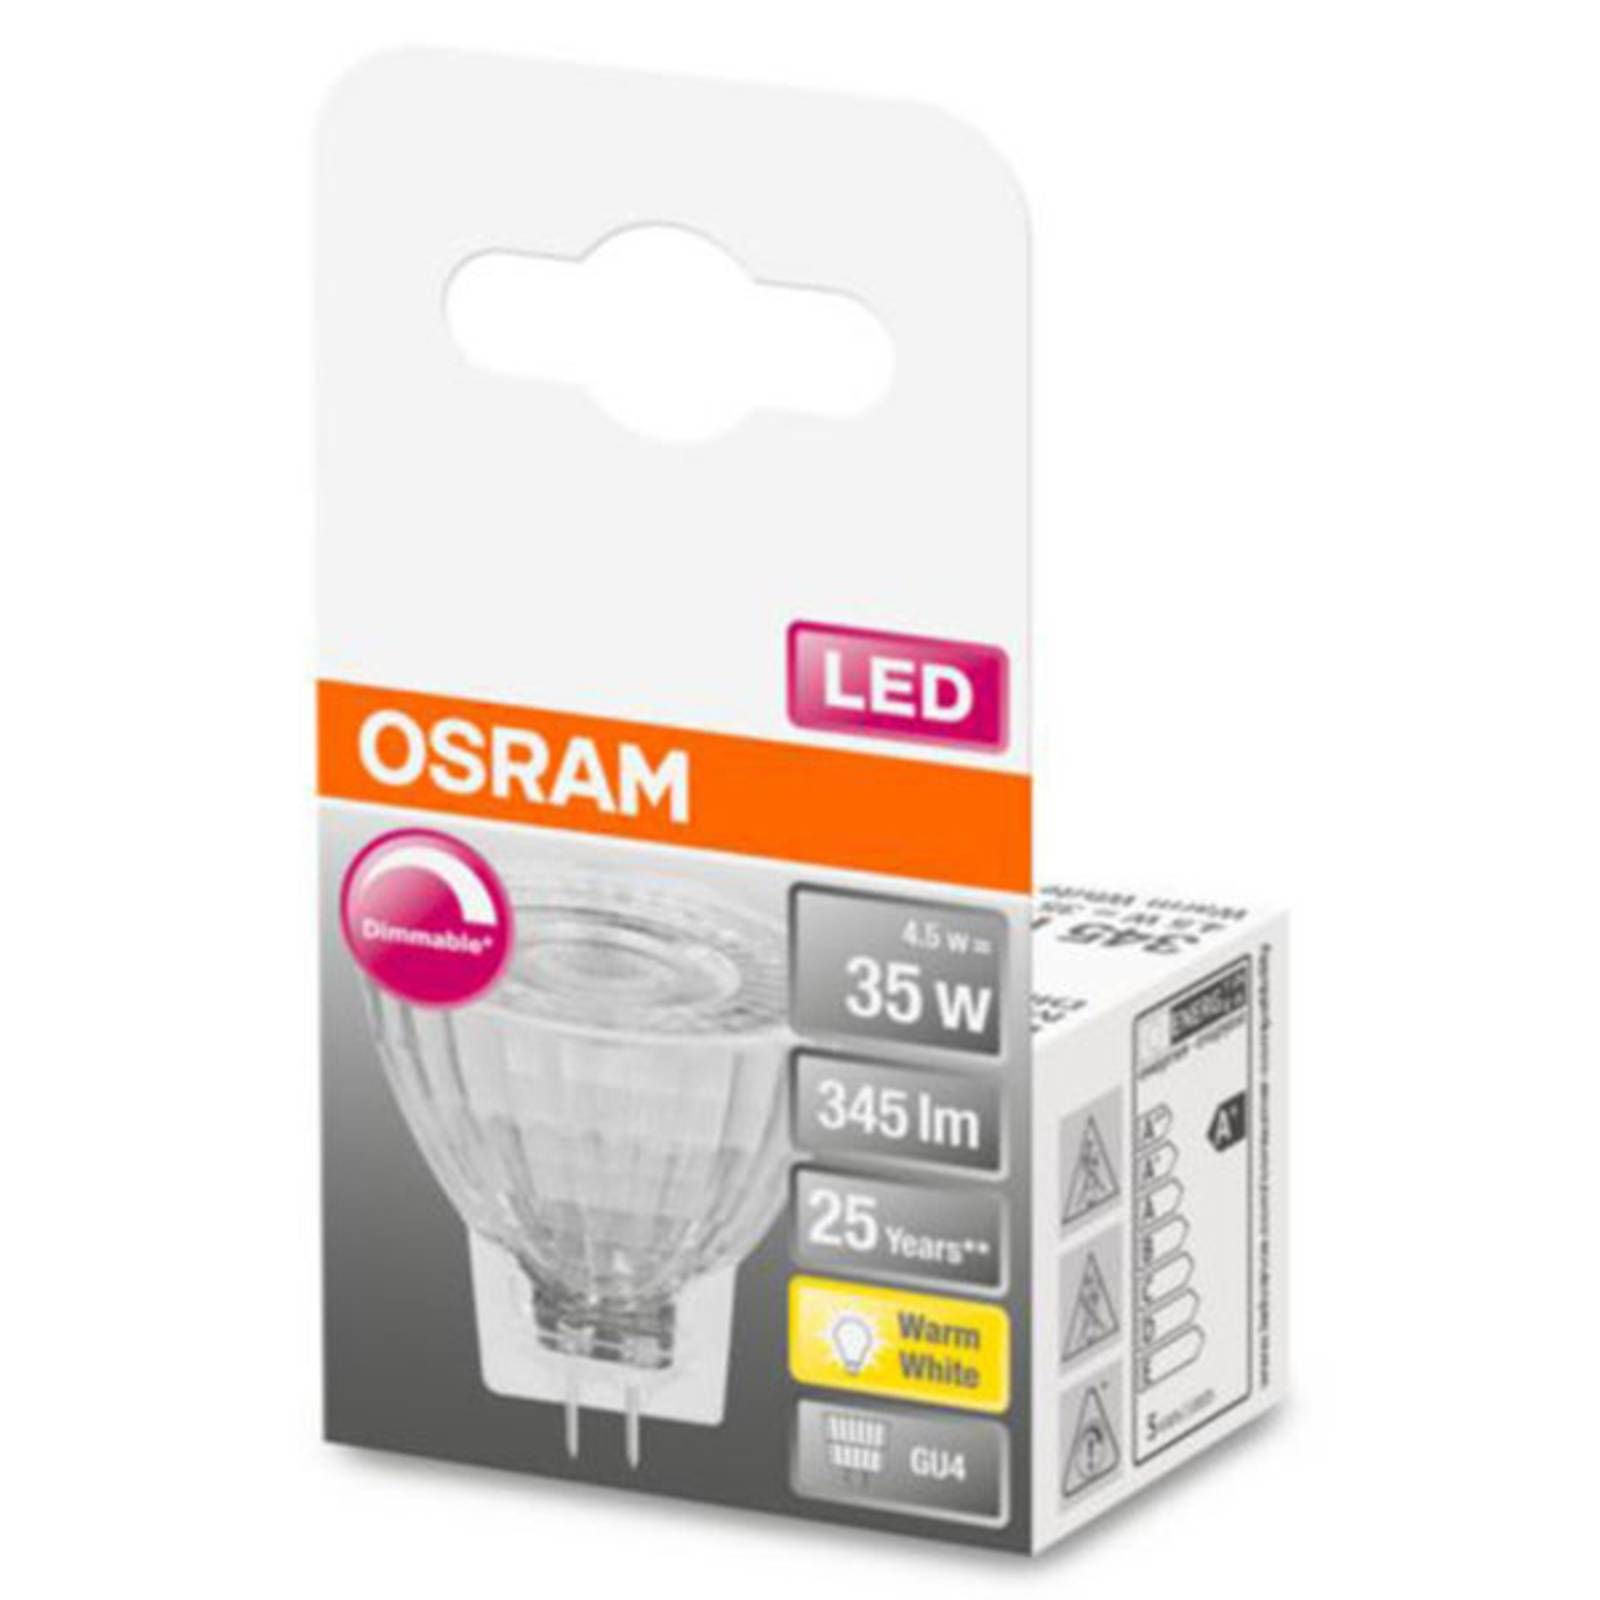 OSRAM LED reflektor GU4 MR11 4, 5W 927 36° stmieva, GU4 / MR11, 4.5W, Energialuokka: G, P: 3.8 cm